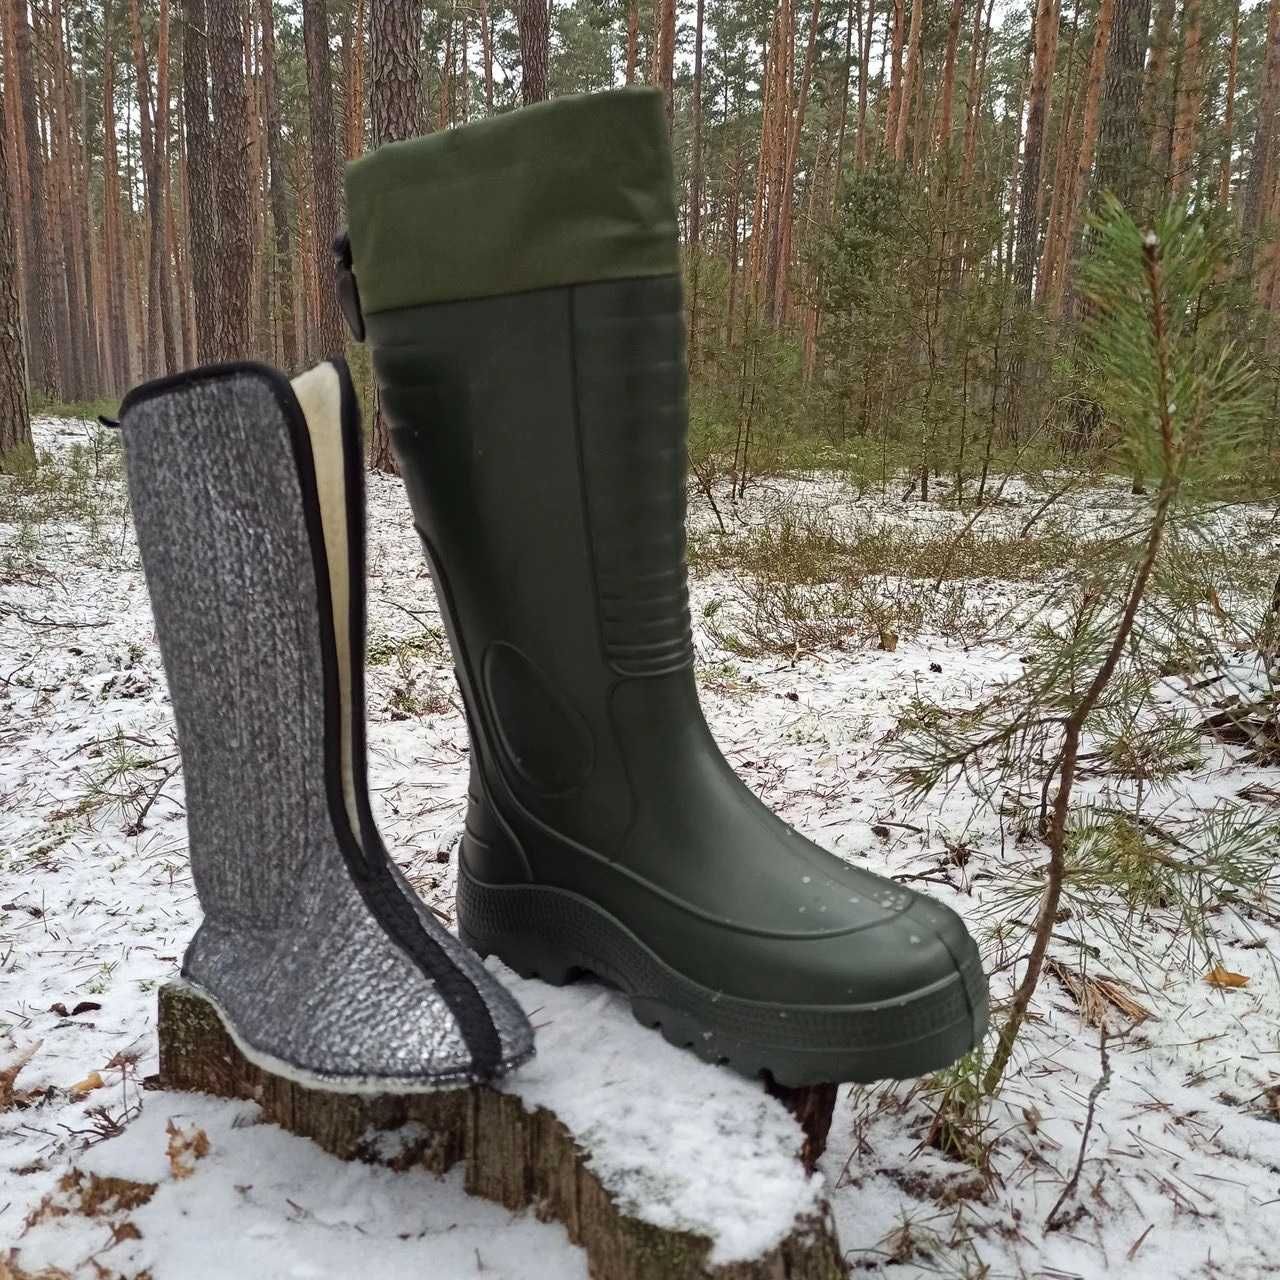 Сапоги с носком для Рыбалки или Охоты Lemigo Arctic 875 ,Польша